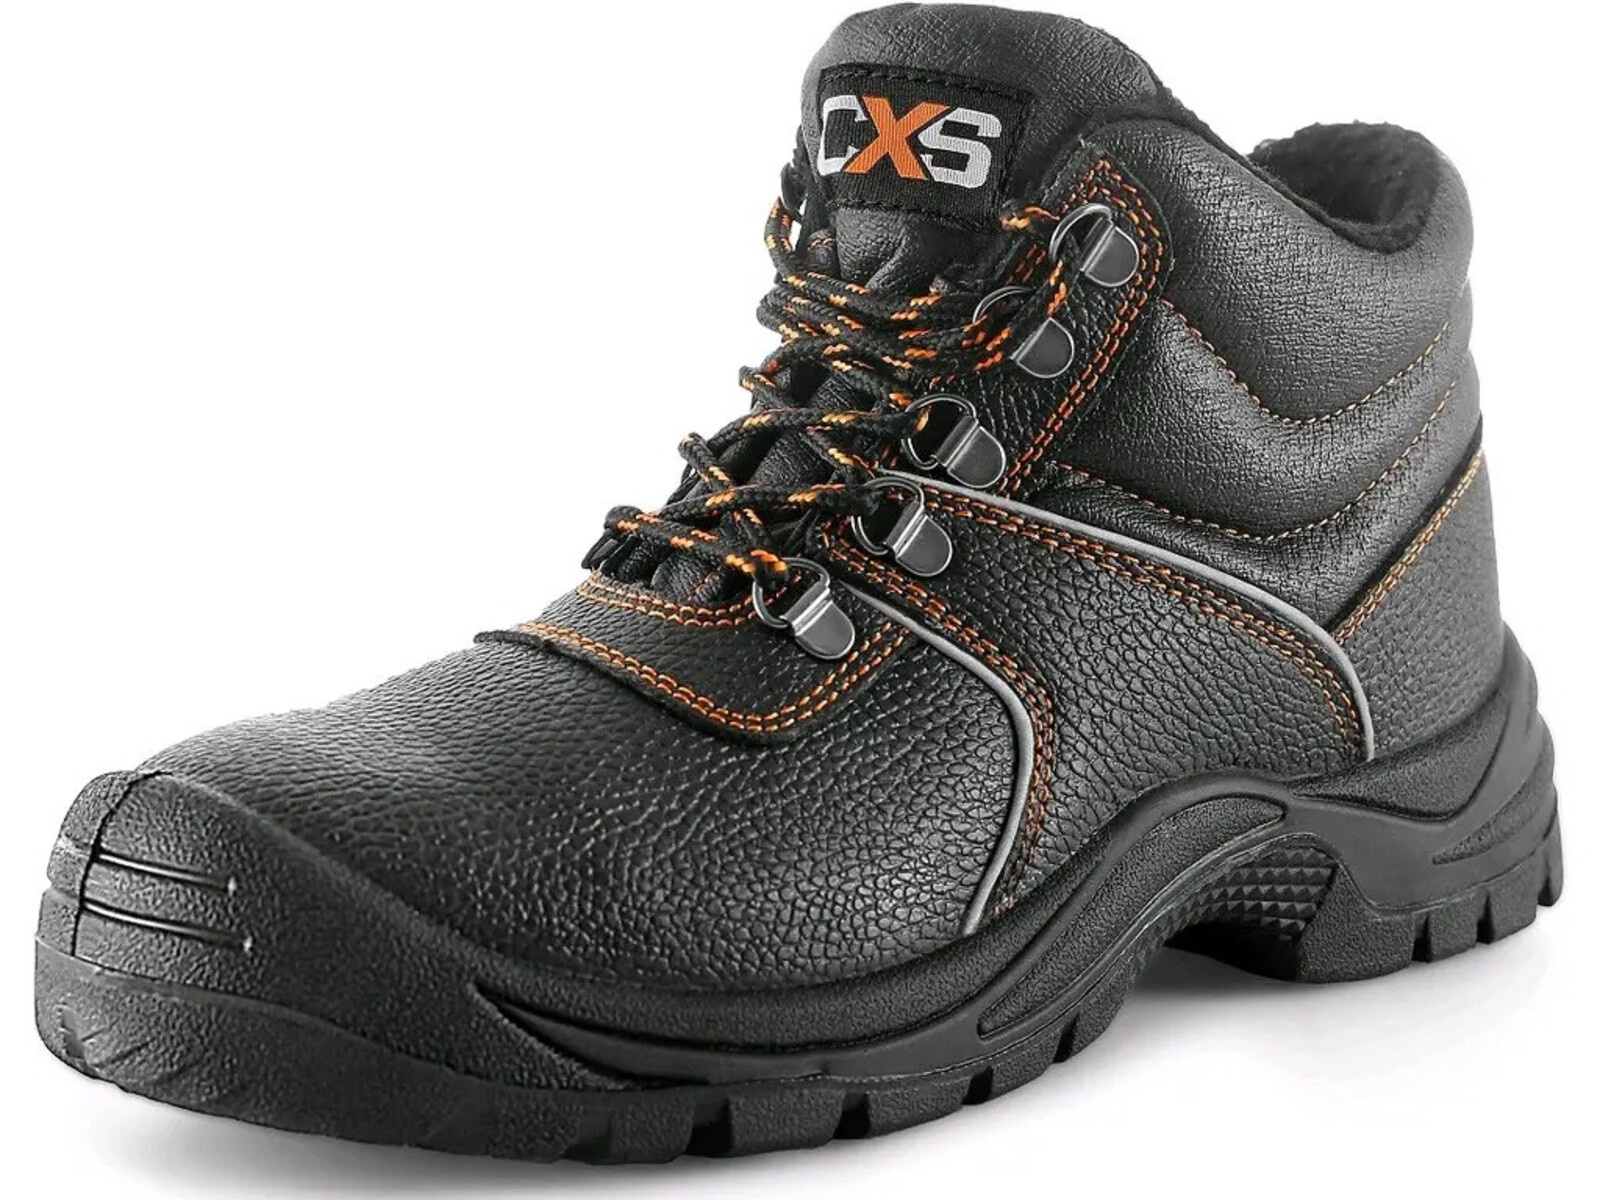 Zimná bezpečnostná členková obuv CXS Stone Apatit Winter S3 SRC - veľkosť: 43, farba: čierna/oranžová